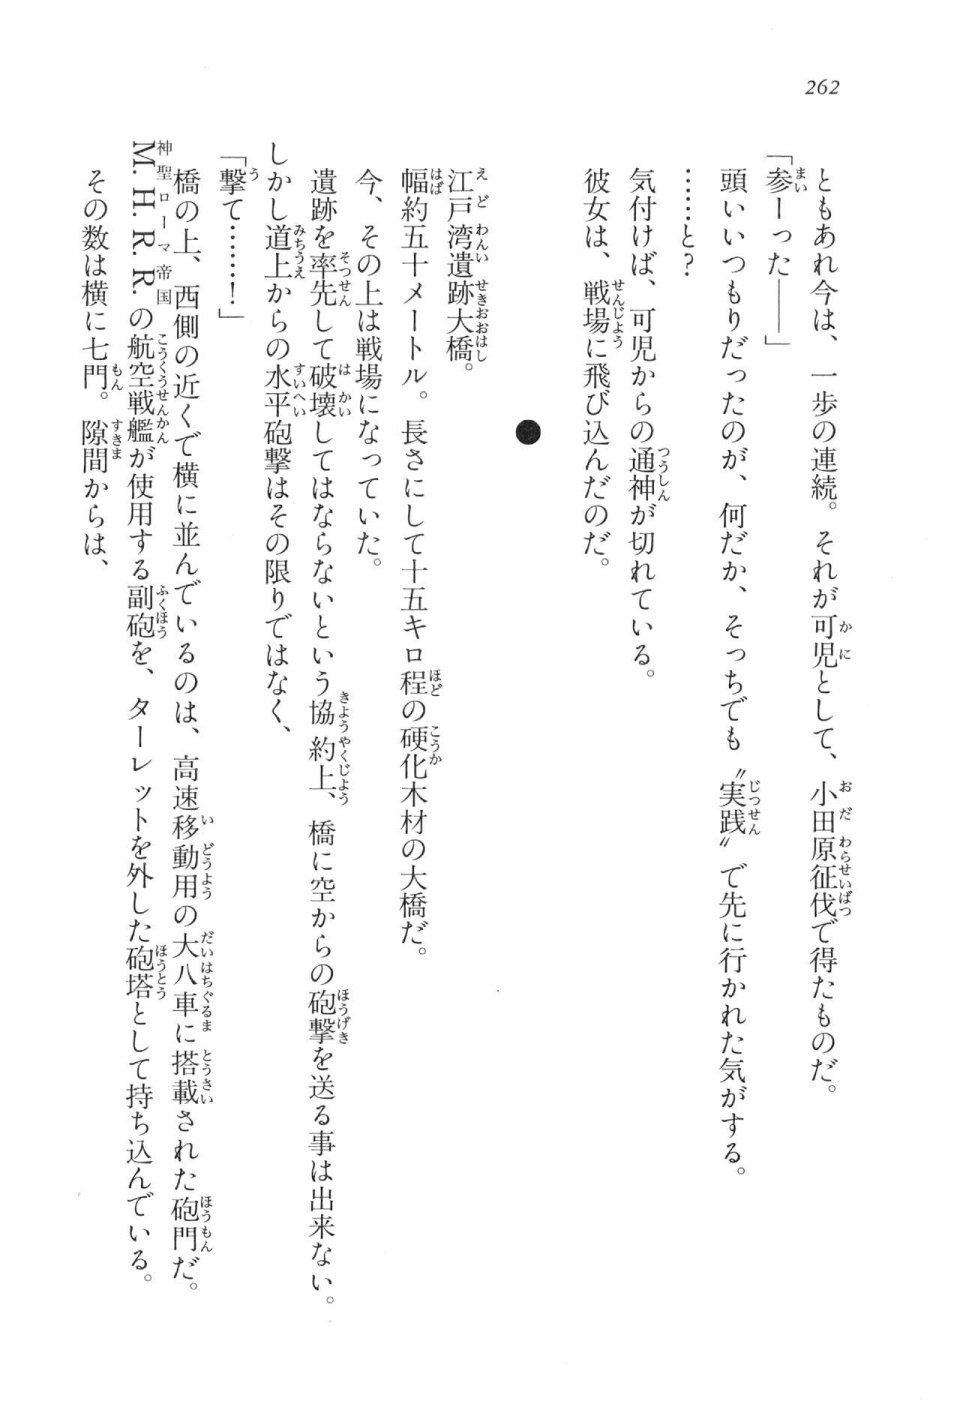 Kyoukai Senjou no Horizon LN Vol 17(7B) - Photo #262